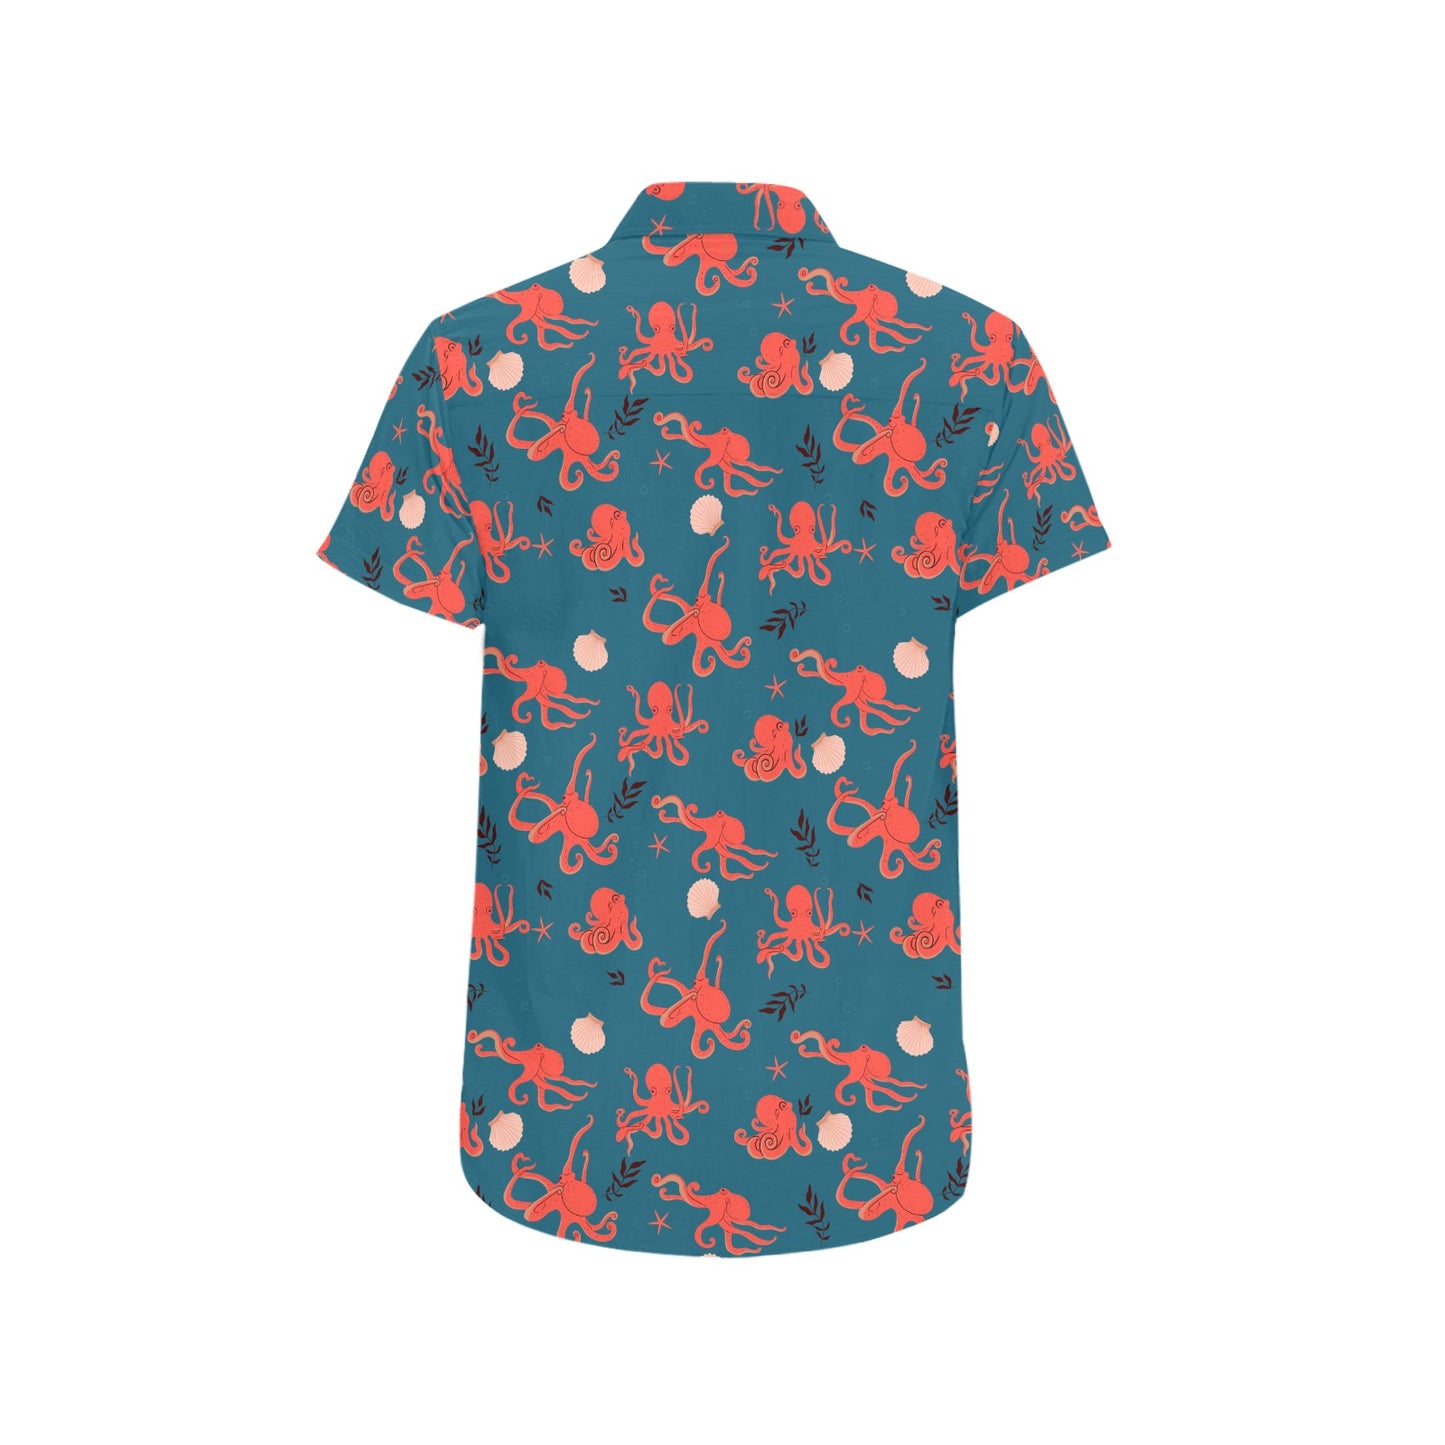 Octopus Ocean Short Sleeve Men Button Up Shirt, Beach Blue Sea Shells Kraken Print Casual Buttoned Down Summer Dress Plus Size Shirt